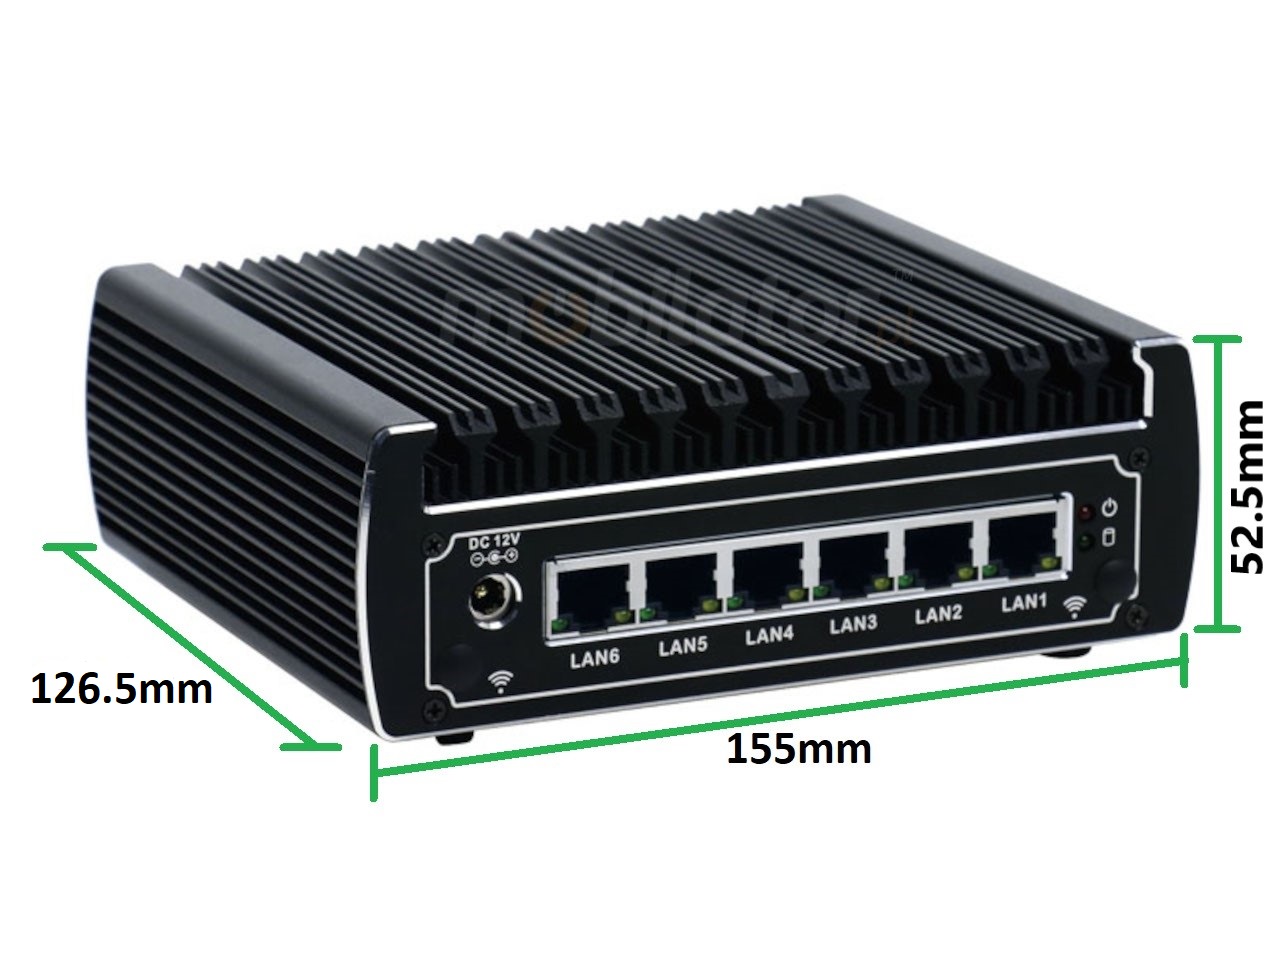  IBOX N133 wymiary przemysowy may szybki niezawodny intel fanless industrial small LAN INTEL i3